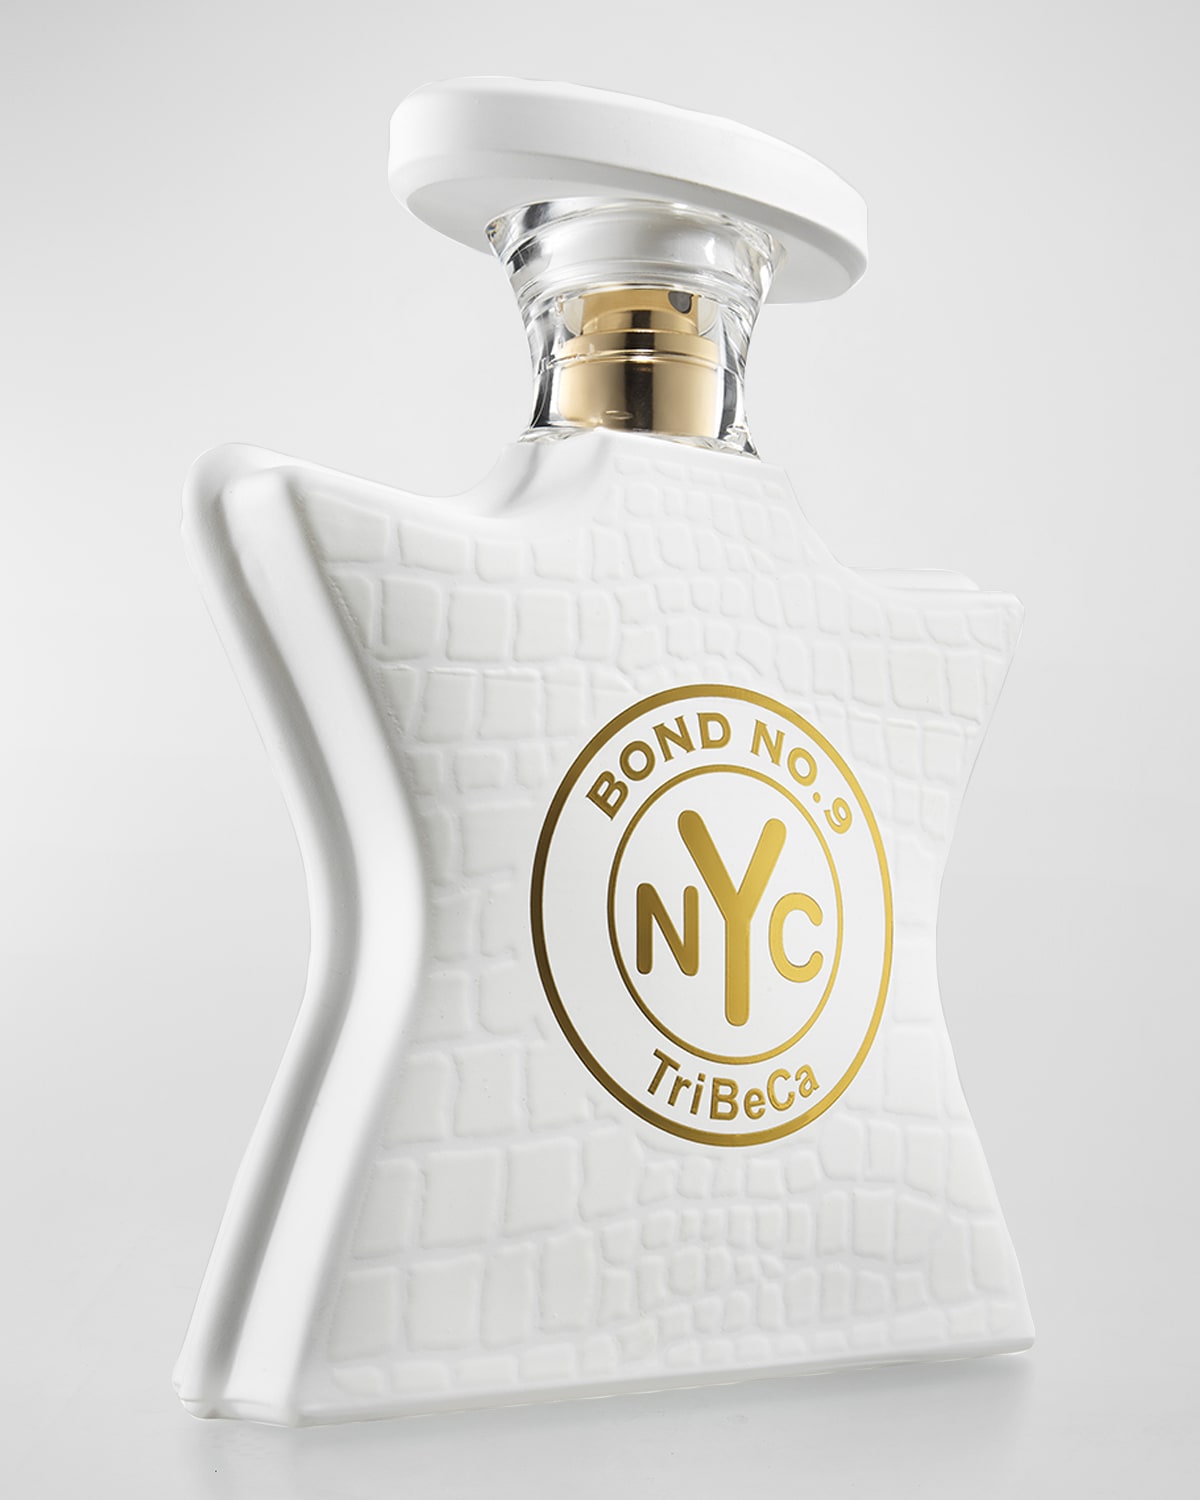 Bond No.9 New York TriBeCa Eau de Parfum, 1.7 oz.